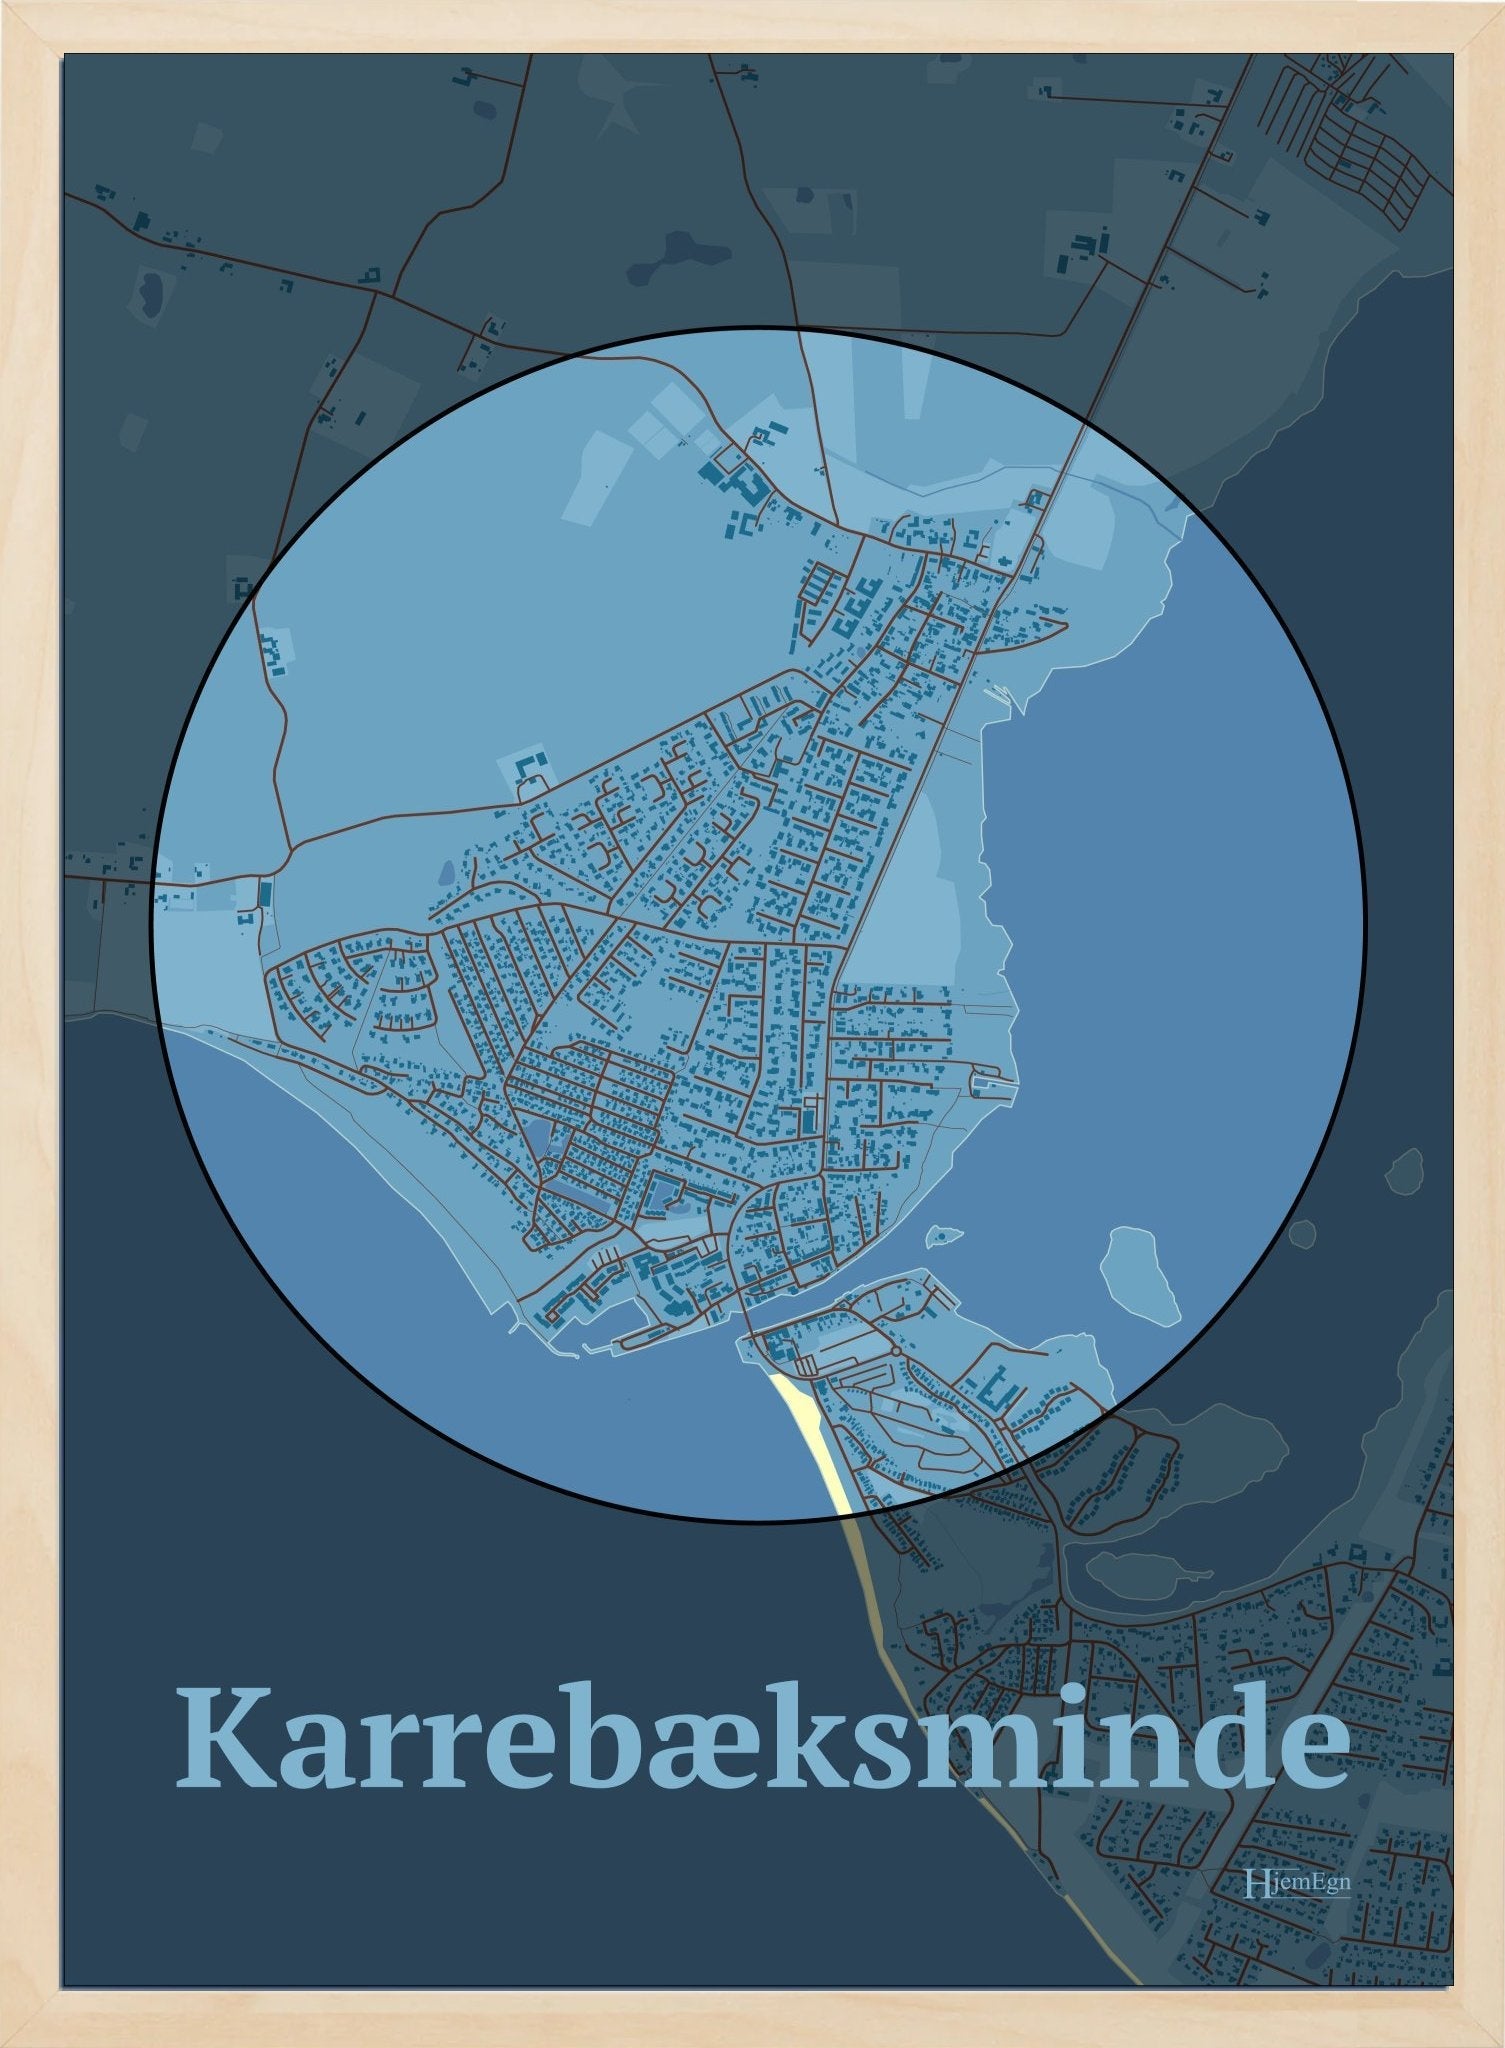 Karrebæksminde plakat i farve pastel blå og HjemEgn.dk design centrum. Design bykort for Karrebæksminde